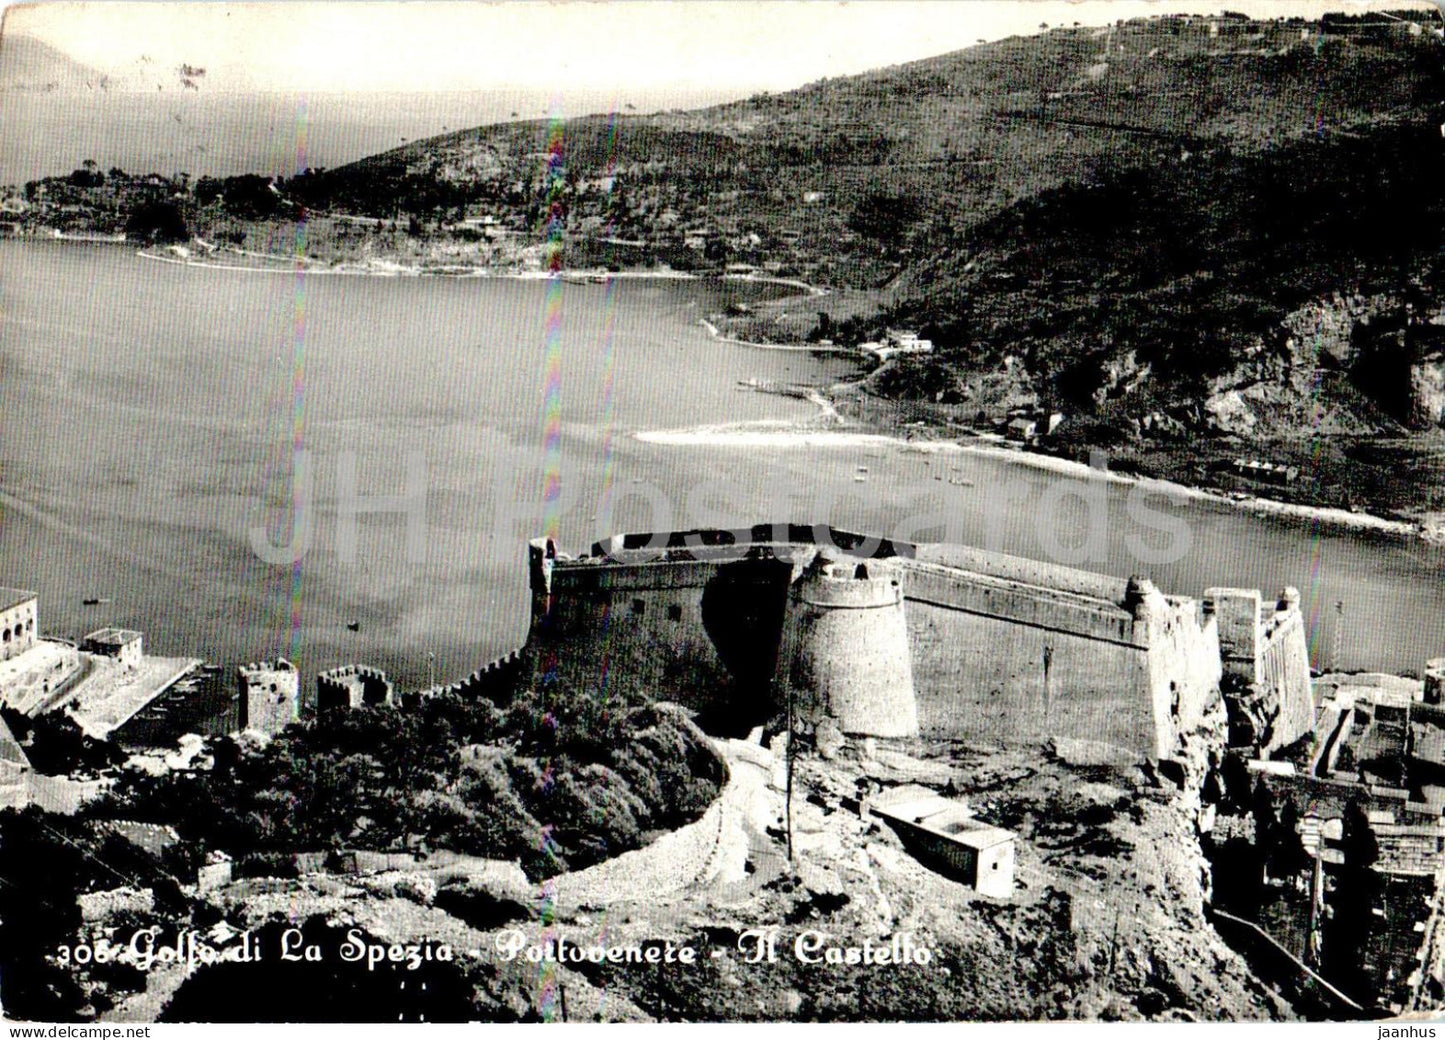 Golfo di la Spezia - Portovenere - Il Castello - castle - 60 - old postcard - 1956 - Italy - used - JH Postcards